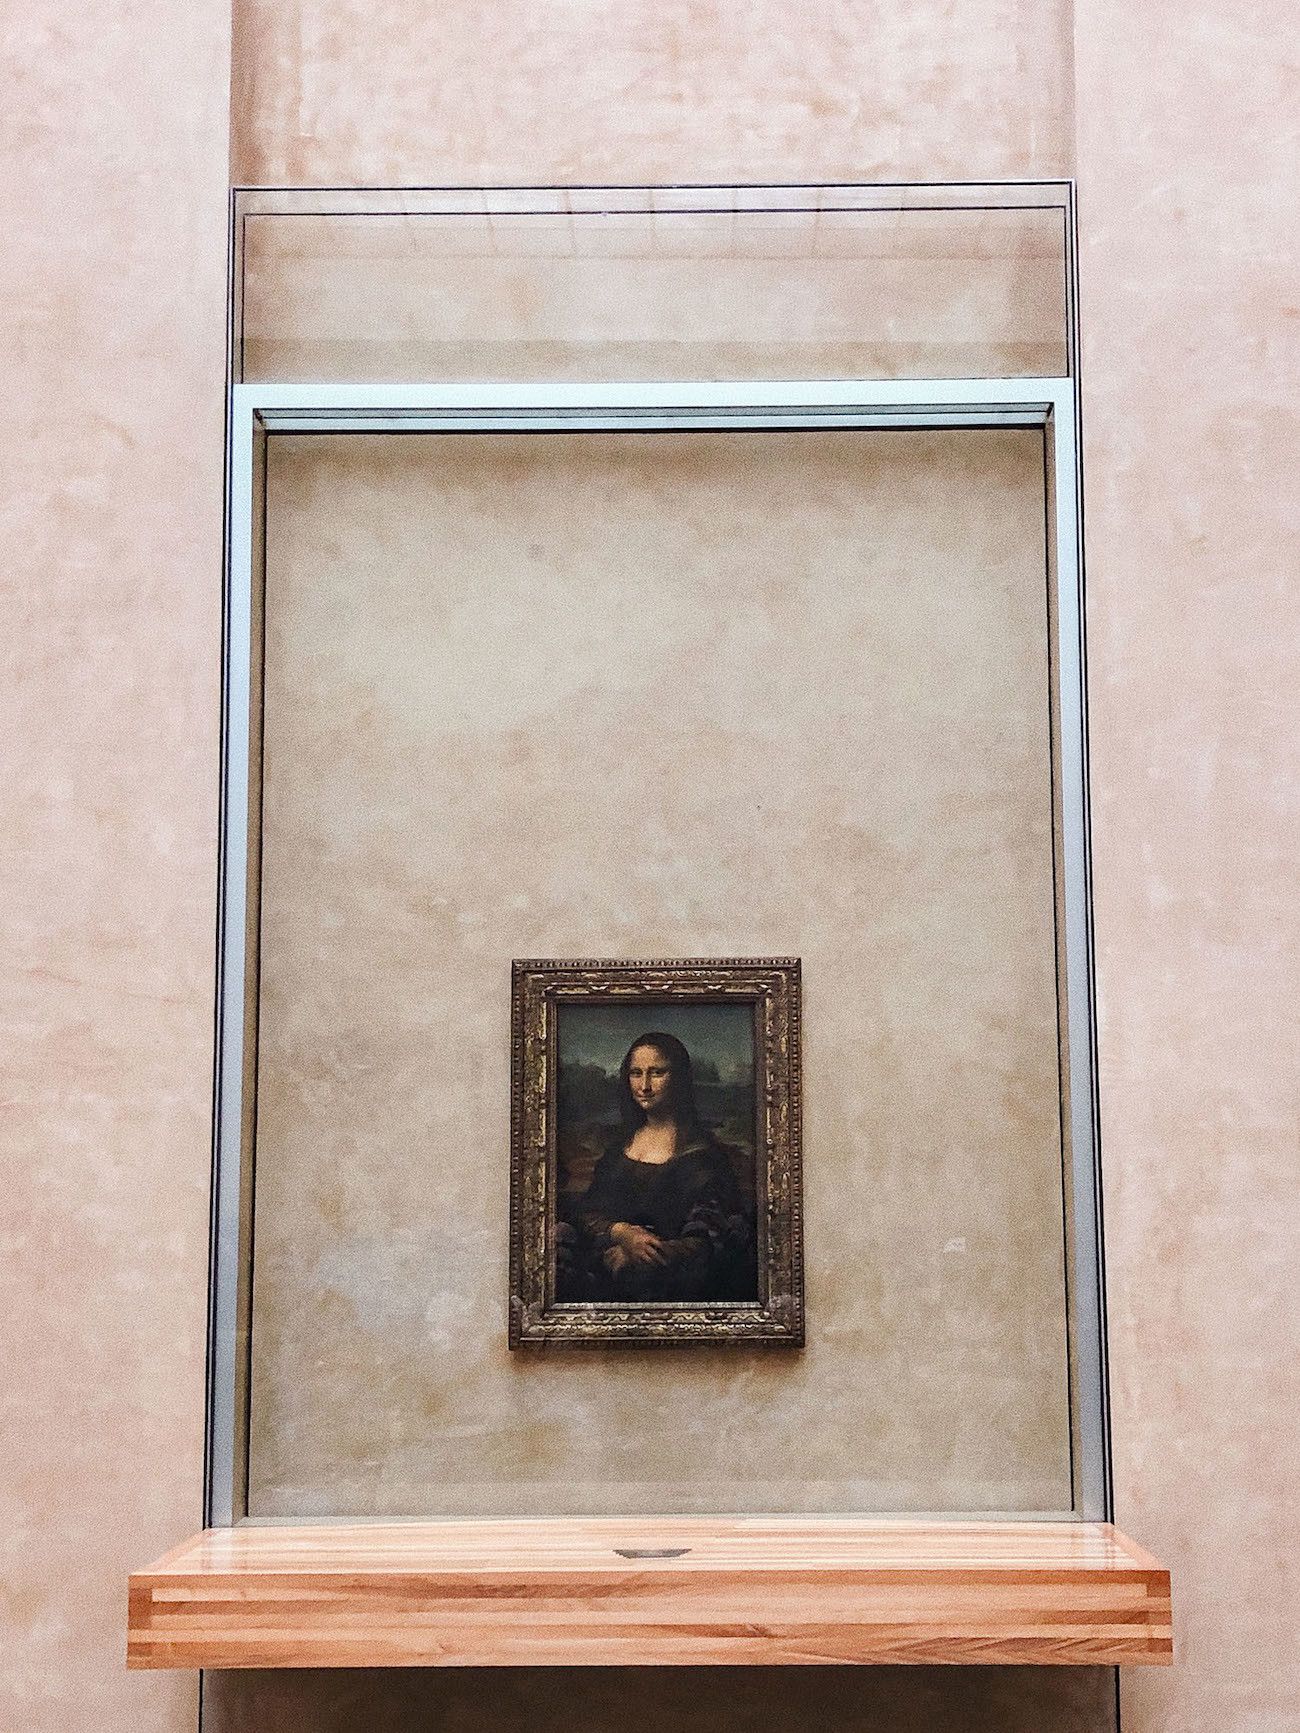 Foodblog About Fuel, Paris, Louvre, Mona Lisa